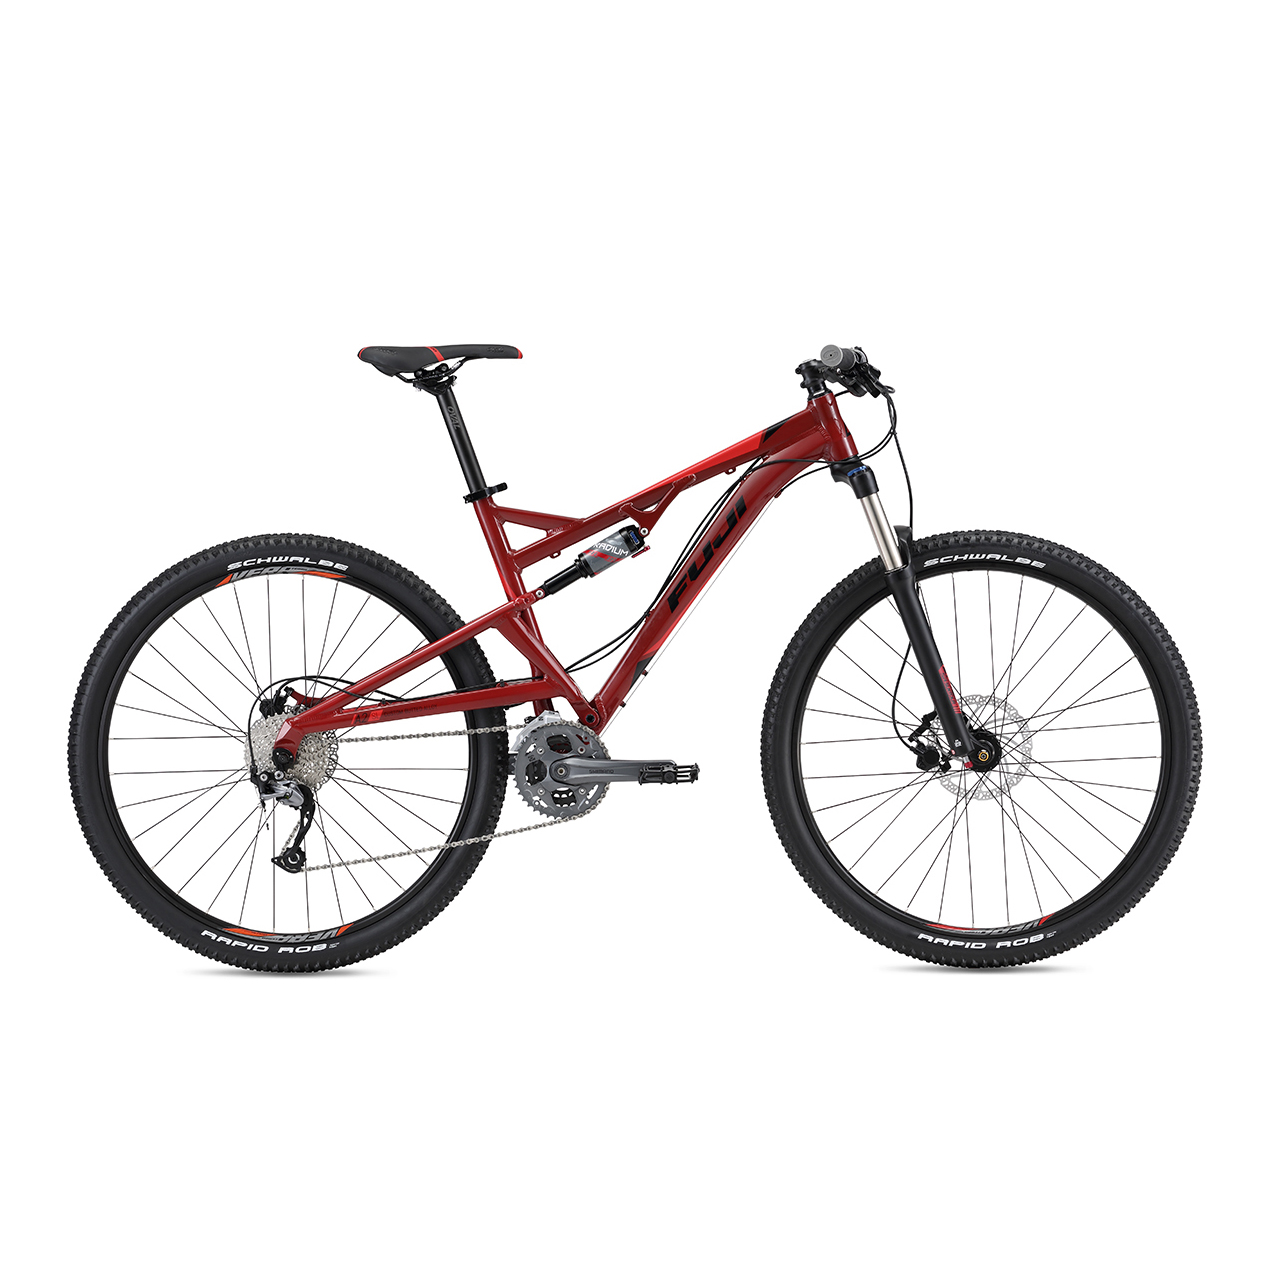 دوچرخه کوهستان فوجی Outland 1.3 سایز 29 رنگ قرمز 2016